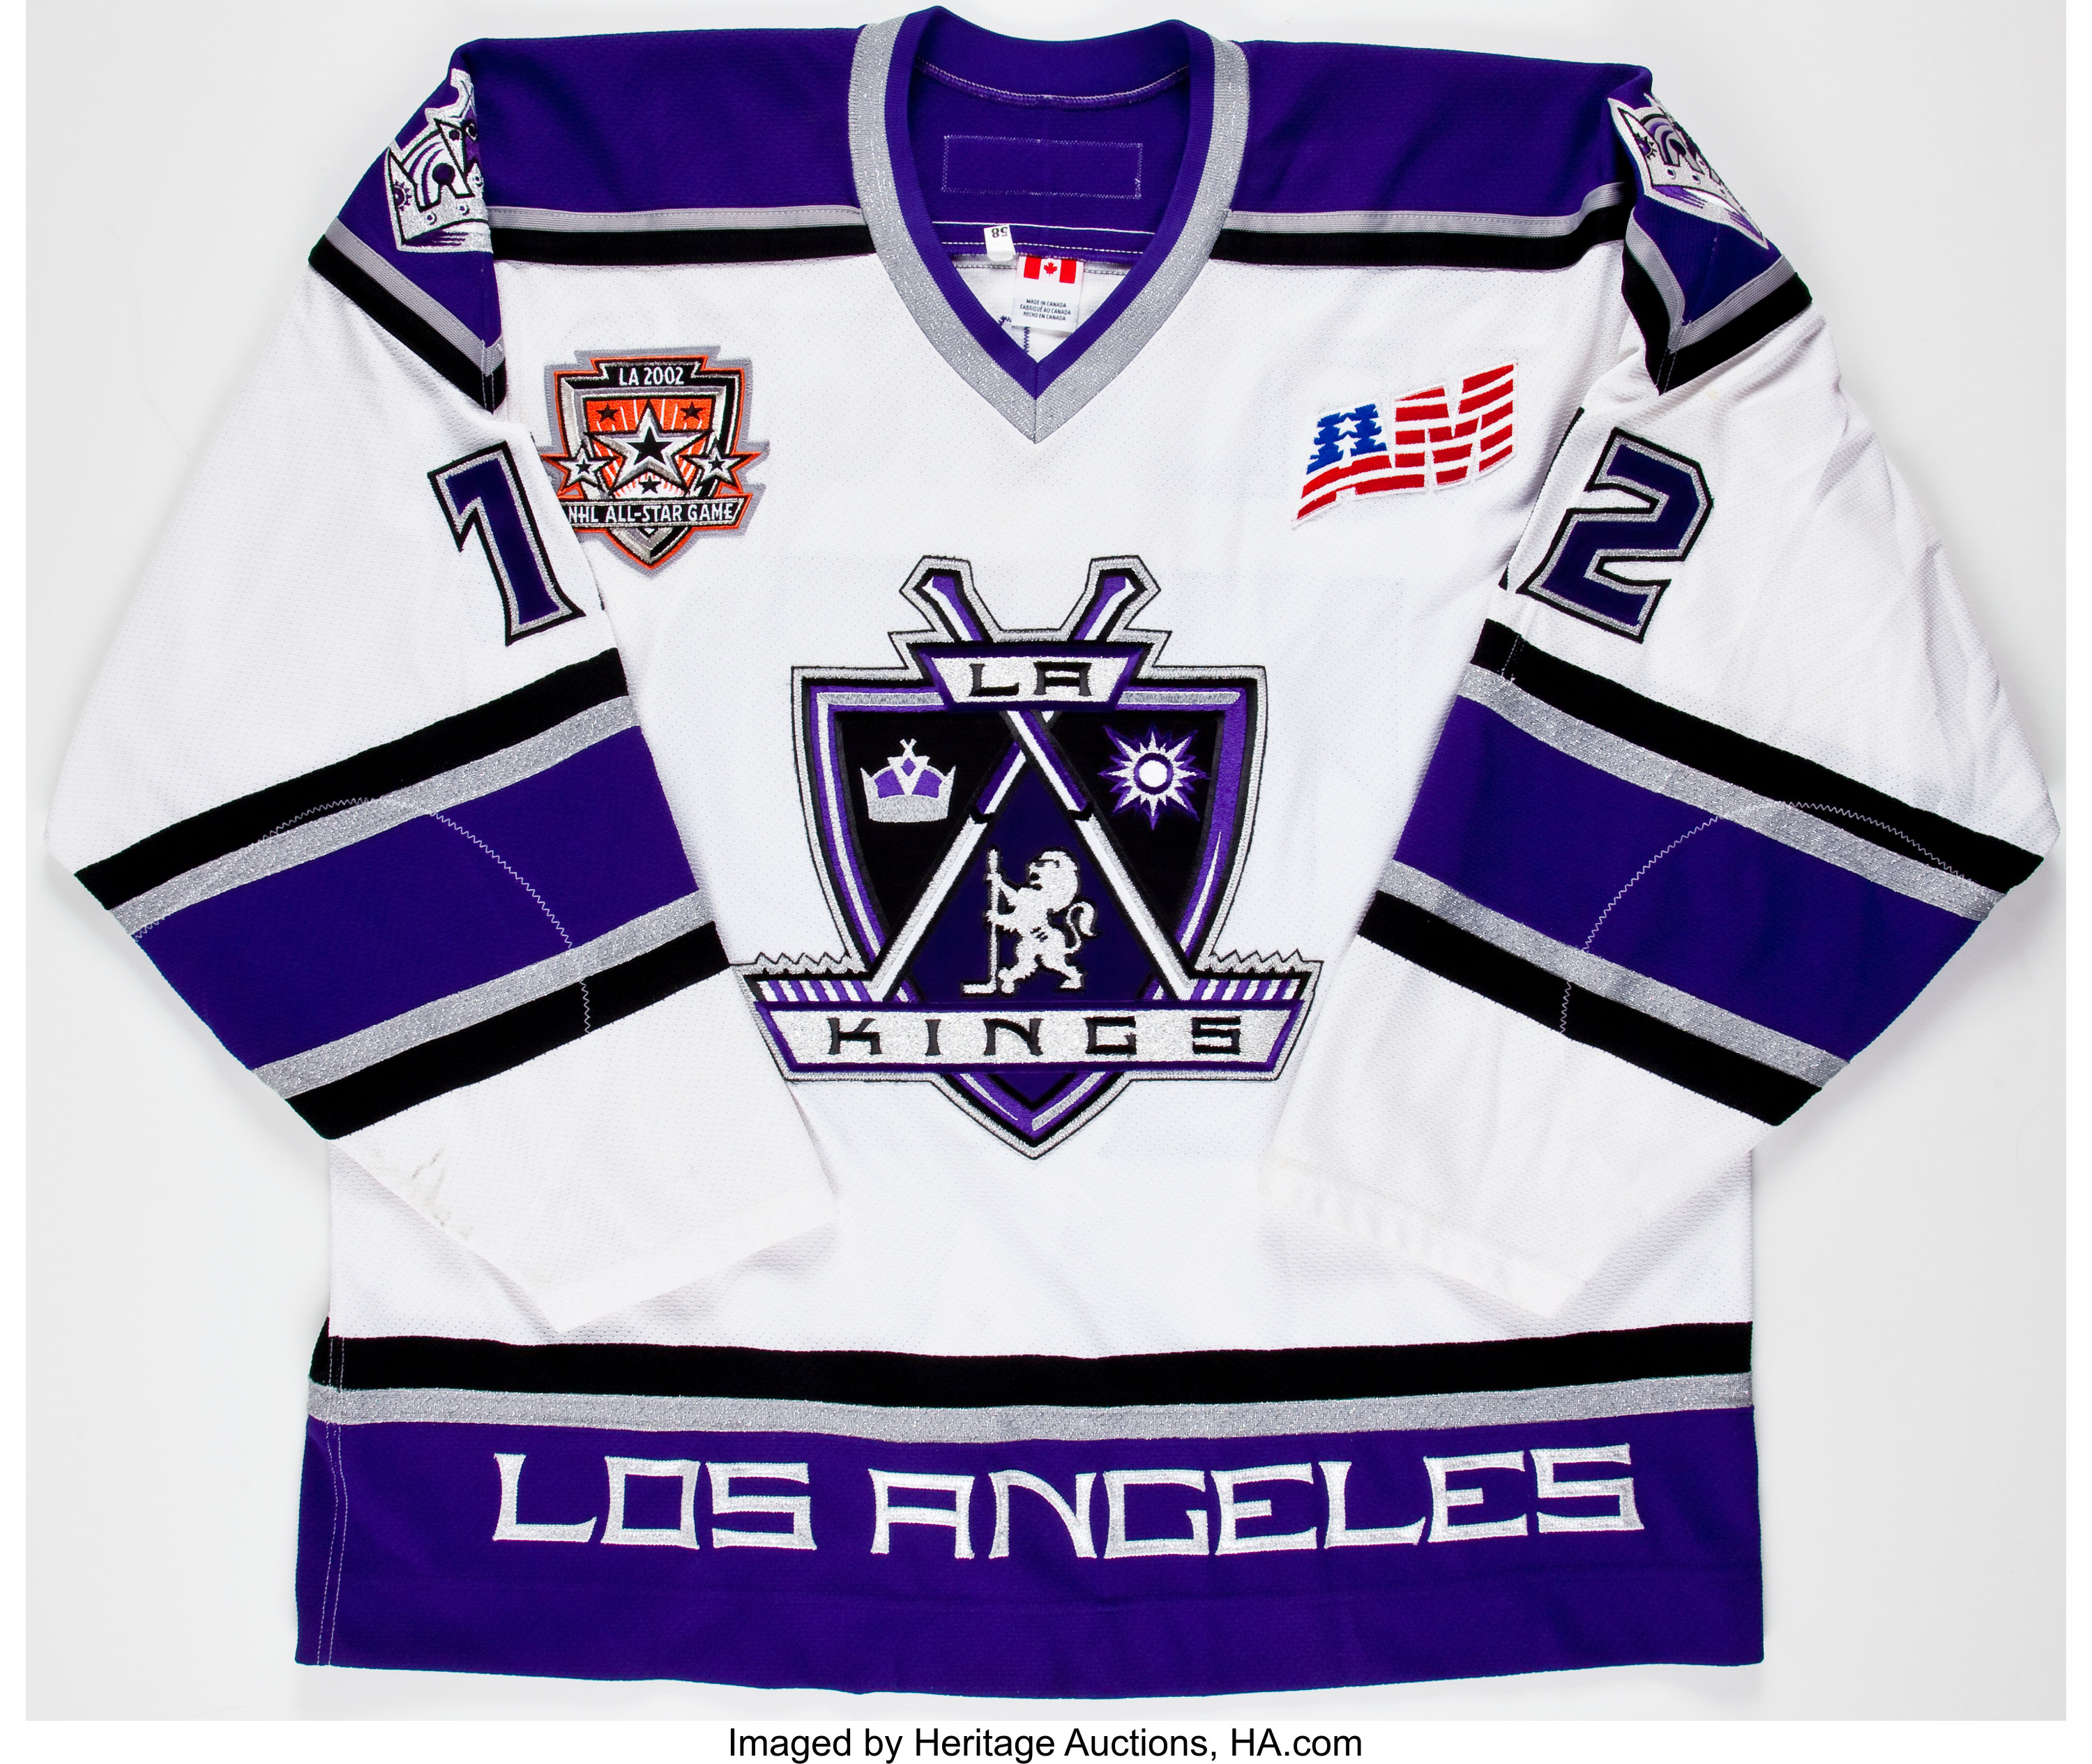 Los Angeles Kings Wear LA Dodgers Warmup Jerseys  Los angeles kings, Kings  hockey, Los angeles kings hockey